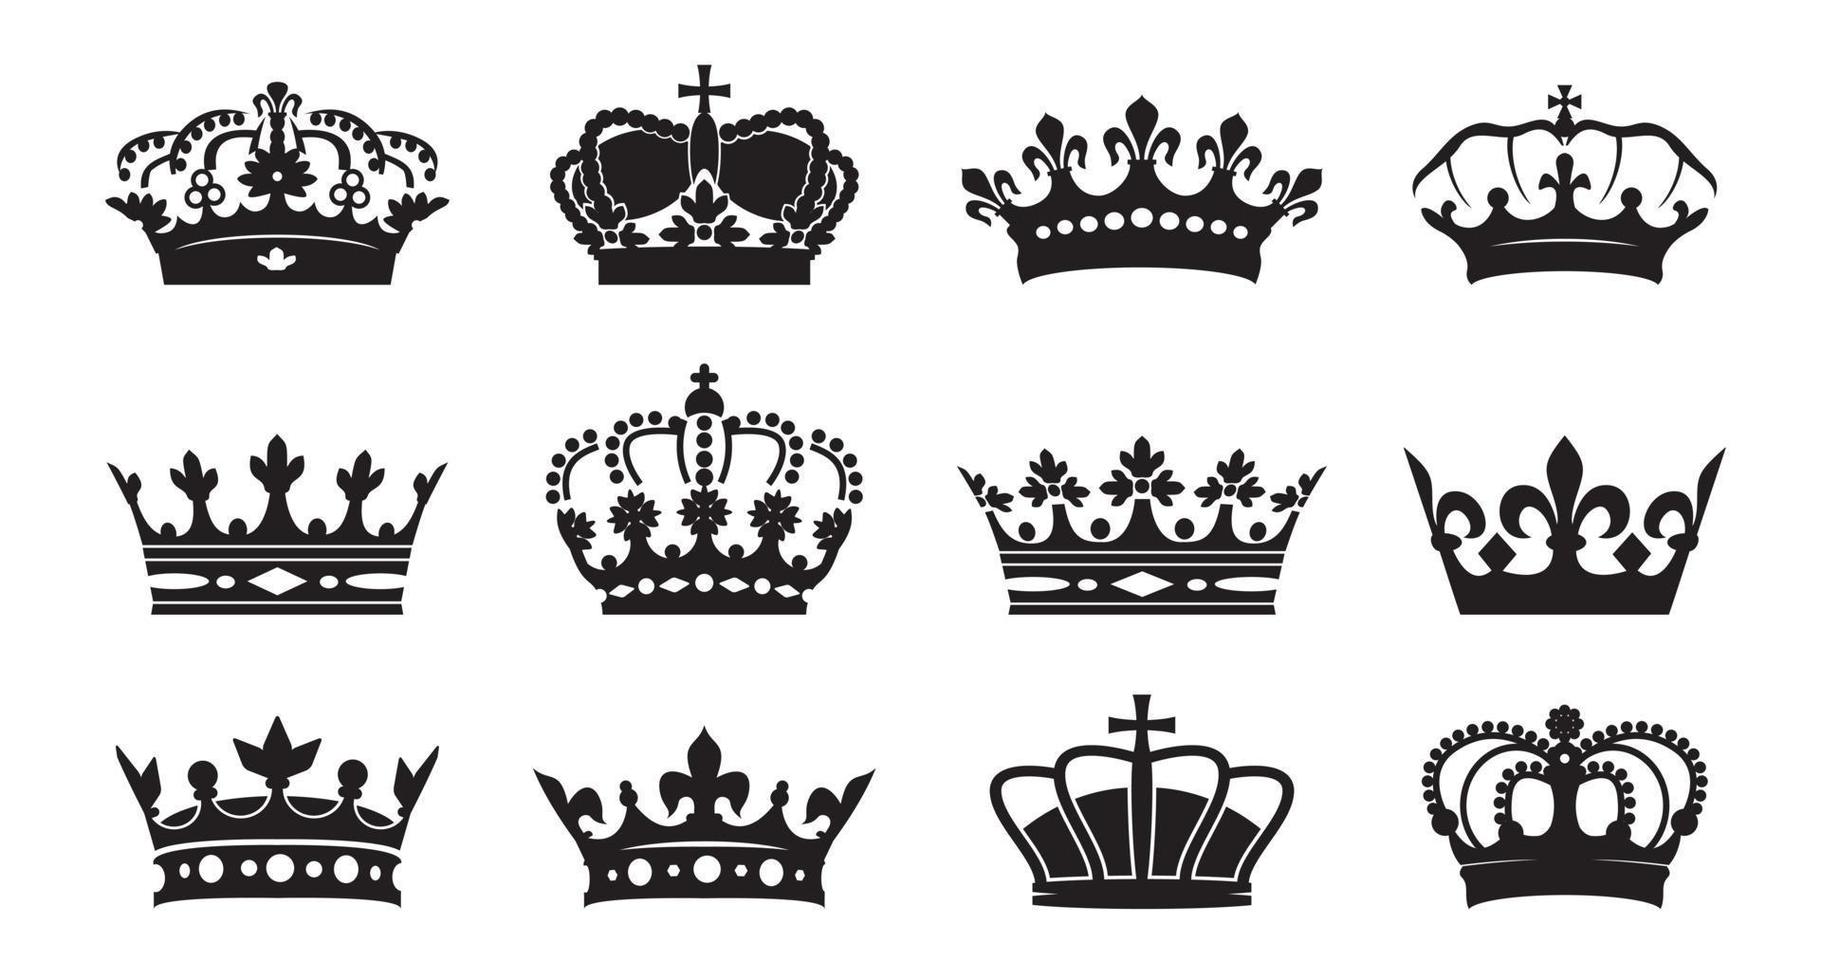 Ange vektor kung kronor ikon på vit bakgrund. vektor illustration. emblem och kungliga symboler.